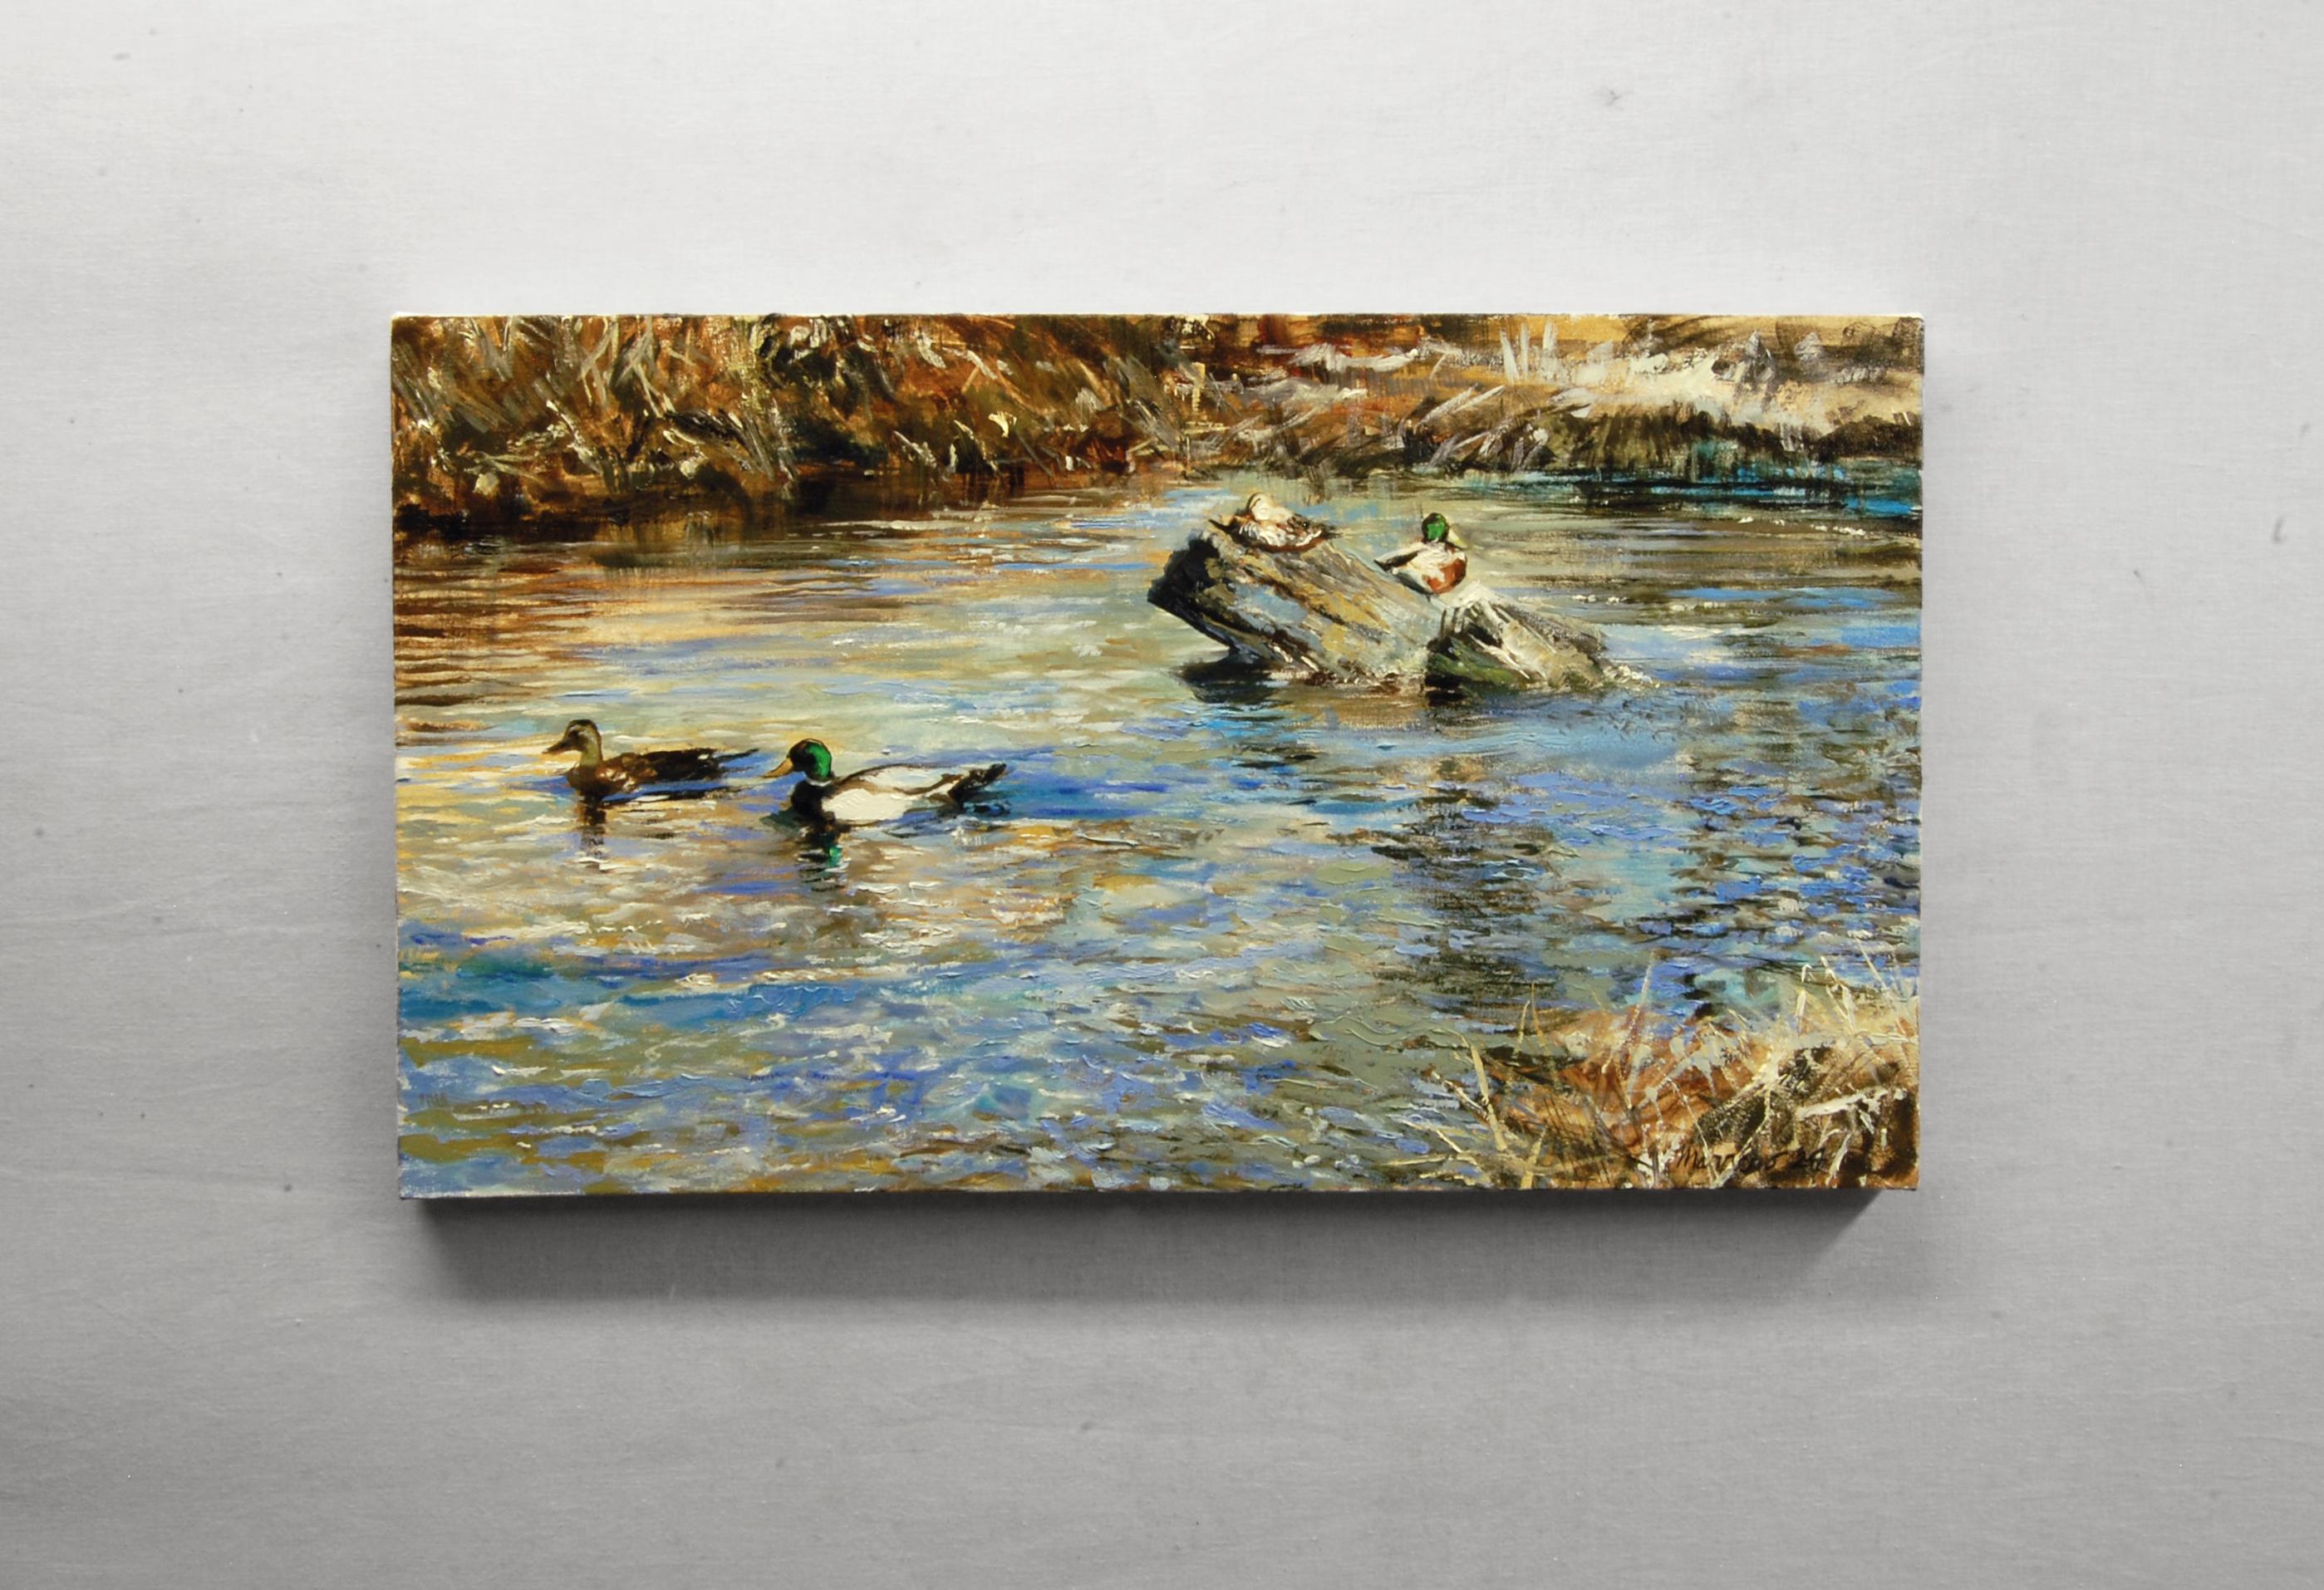 <p>Artistics<br>Les canards colverts se reflètent sur l'eau en mouvement, un couple glissant gracieusement près d'un troisième perché sur un tronc. Les techniques dynamiques du pinceau et du couteau à palette capturent la douce ondulation de la